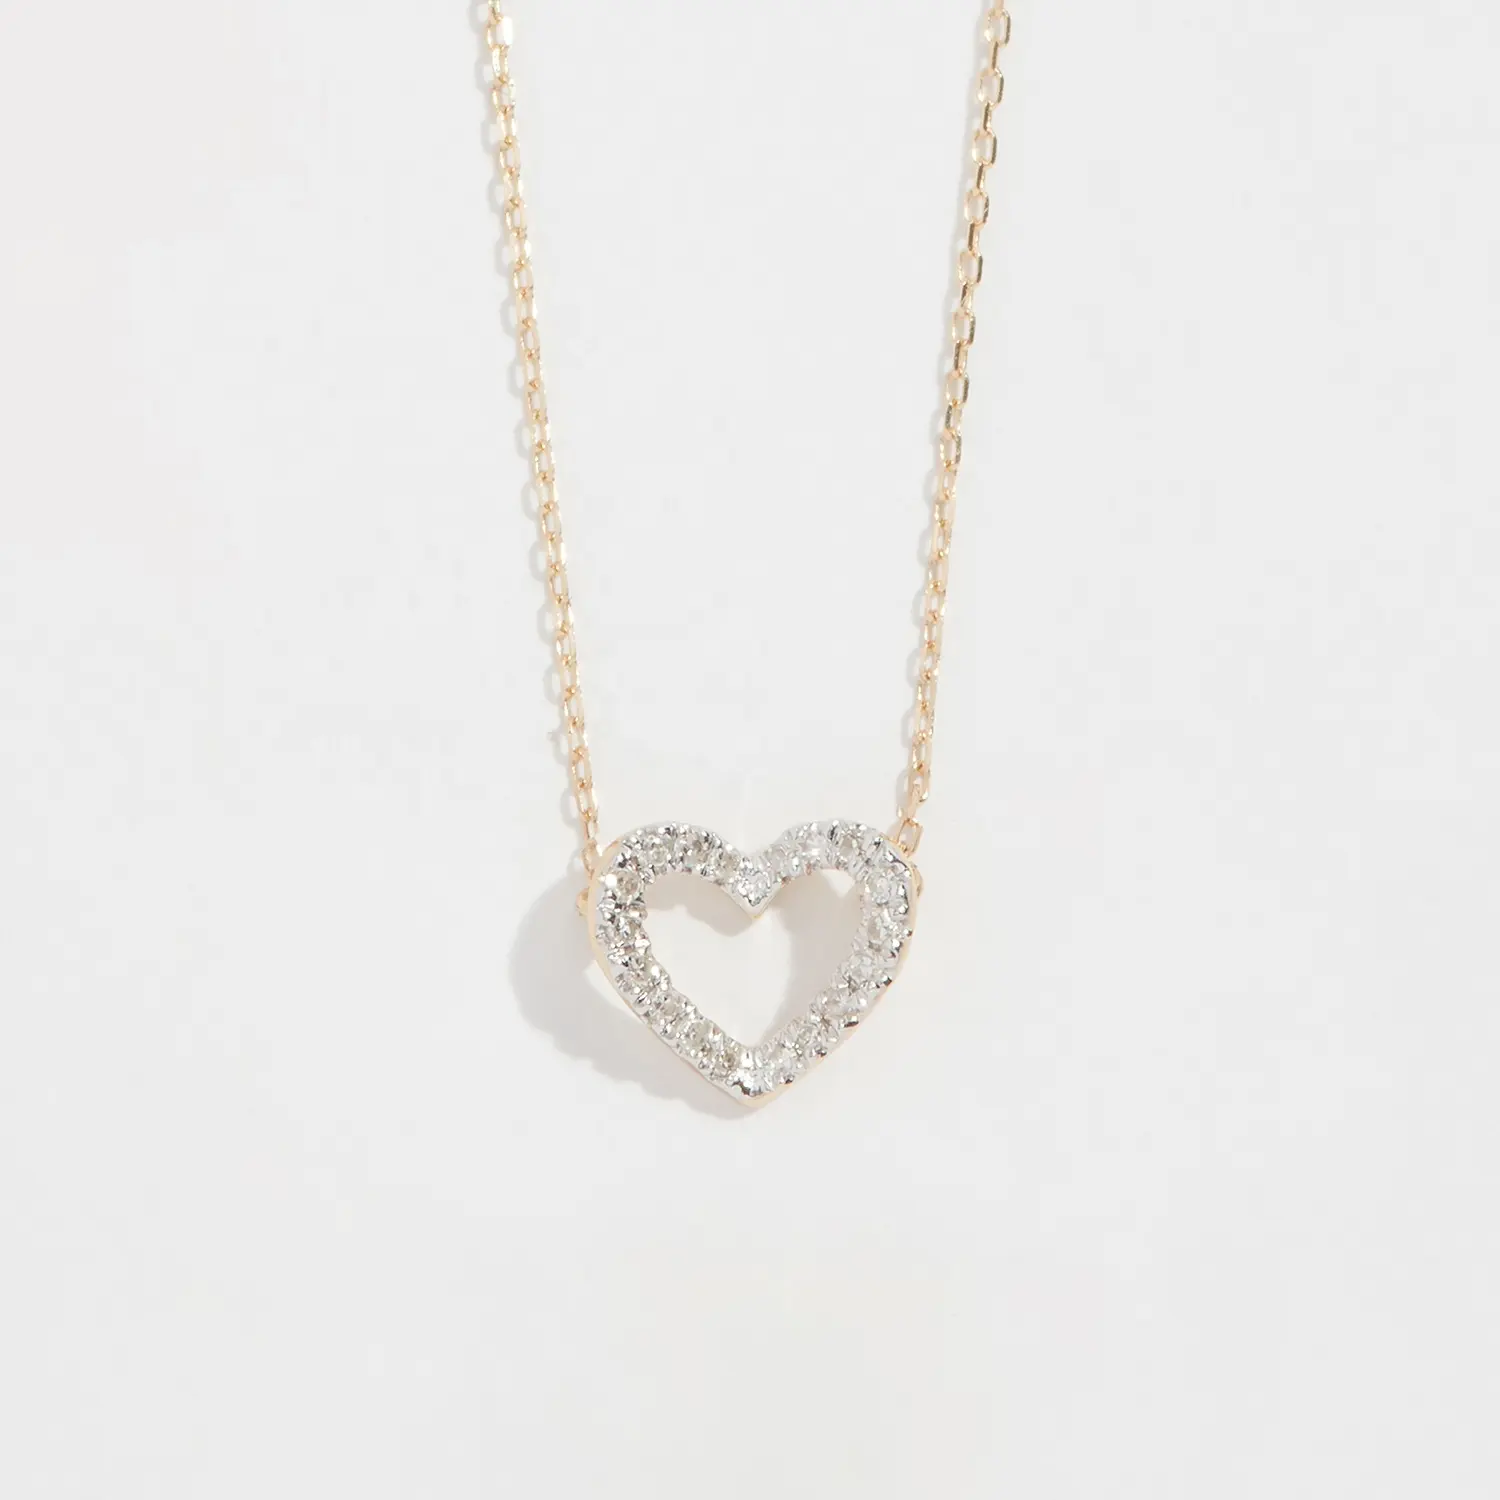 LOZRUNVE — collier en argent 925 avec cœur ouvert, pendentif diamant en argent